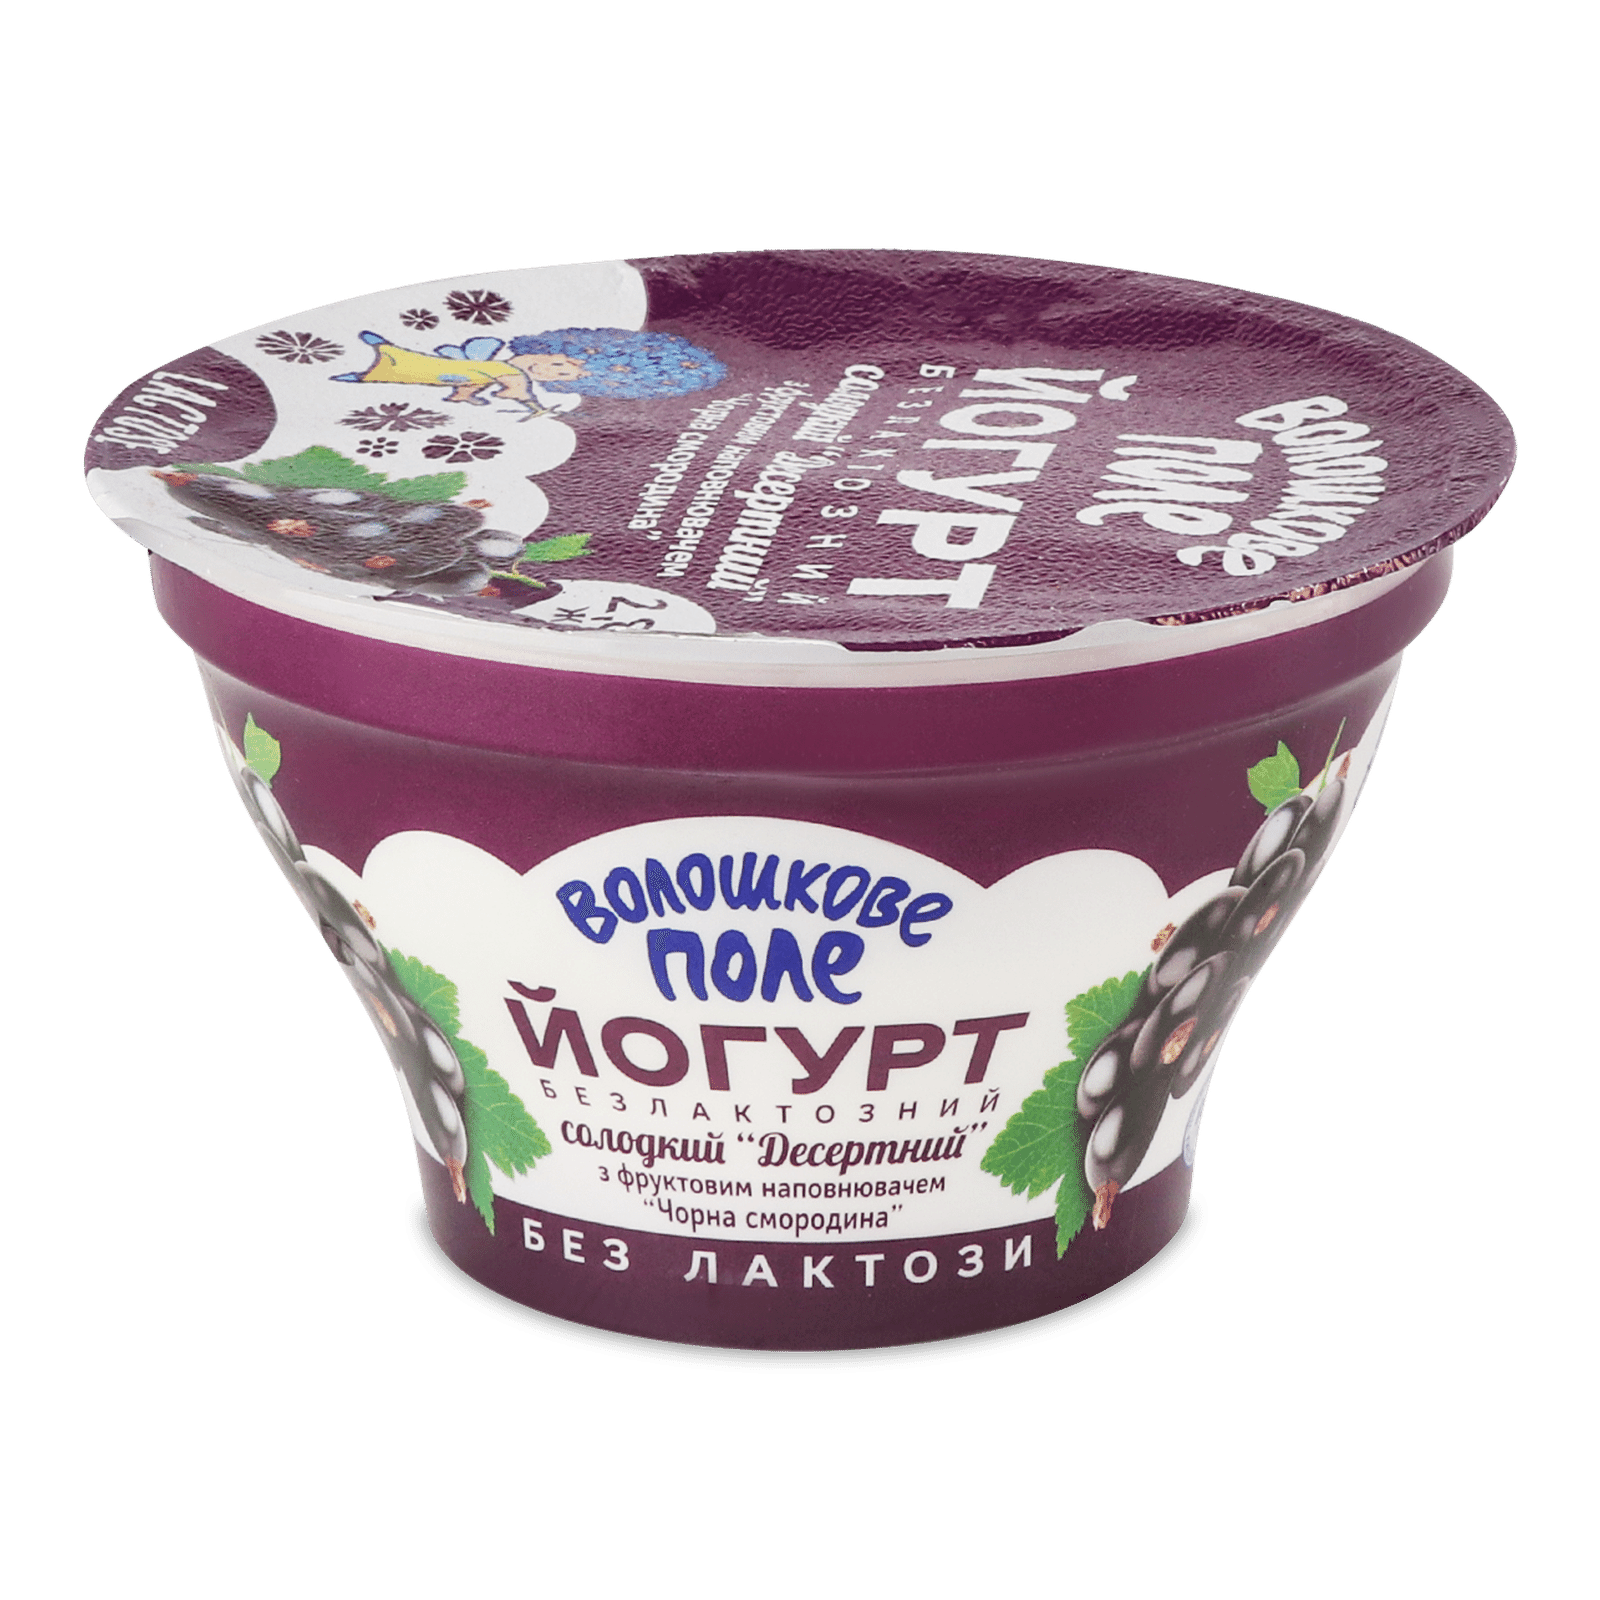 Йогурт «Волошкове поле» Чорна смородинина безлактозний 2,8% - 1